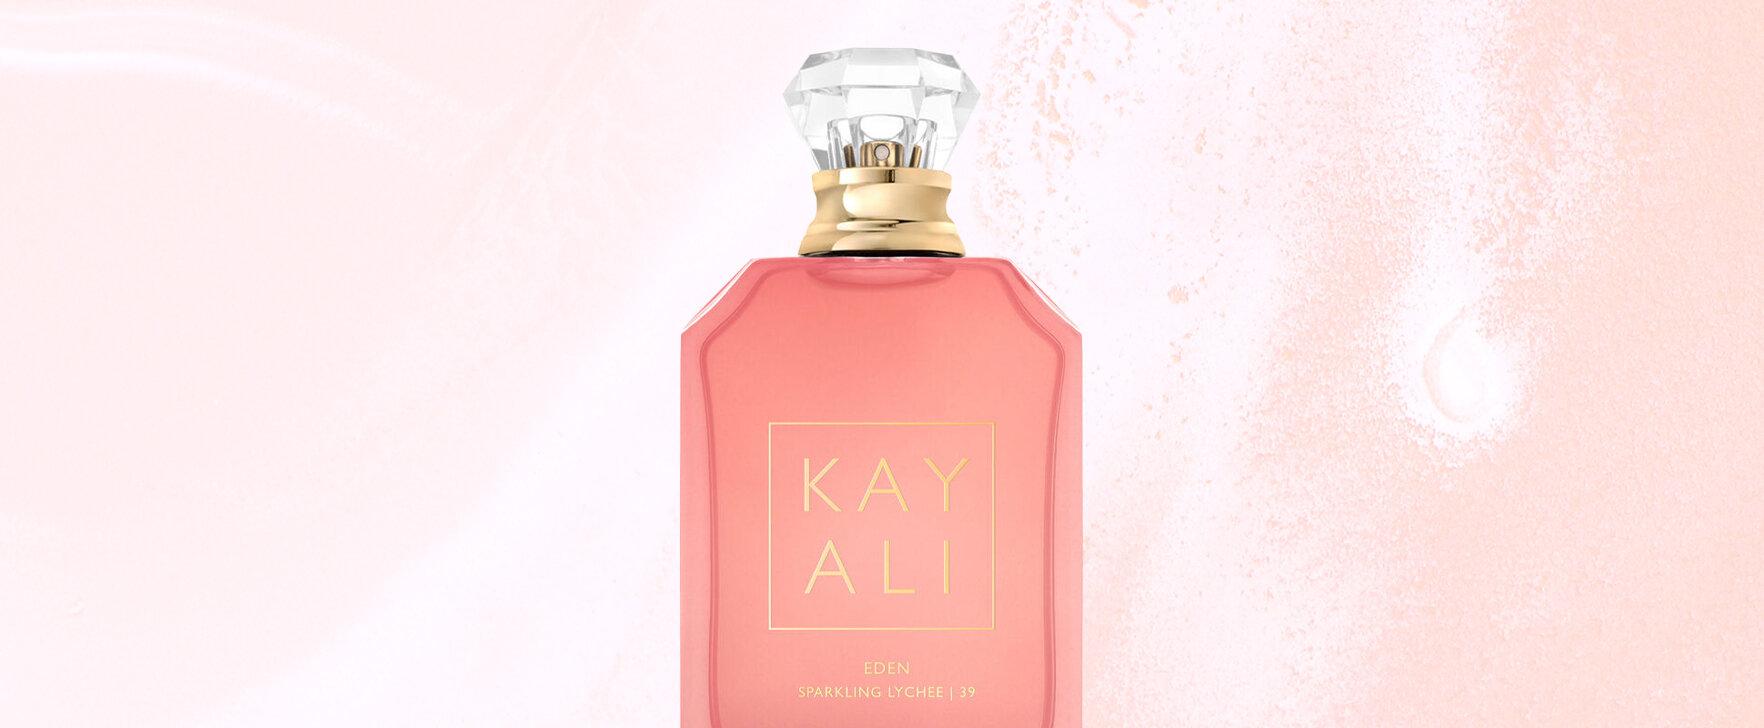 Fruity-Floral Seduction: The Eden Sparkling Lychee | 39 Eau de Parfum by Kayali